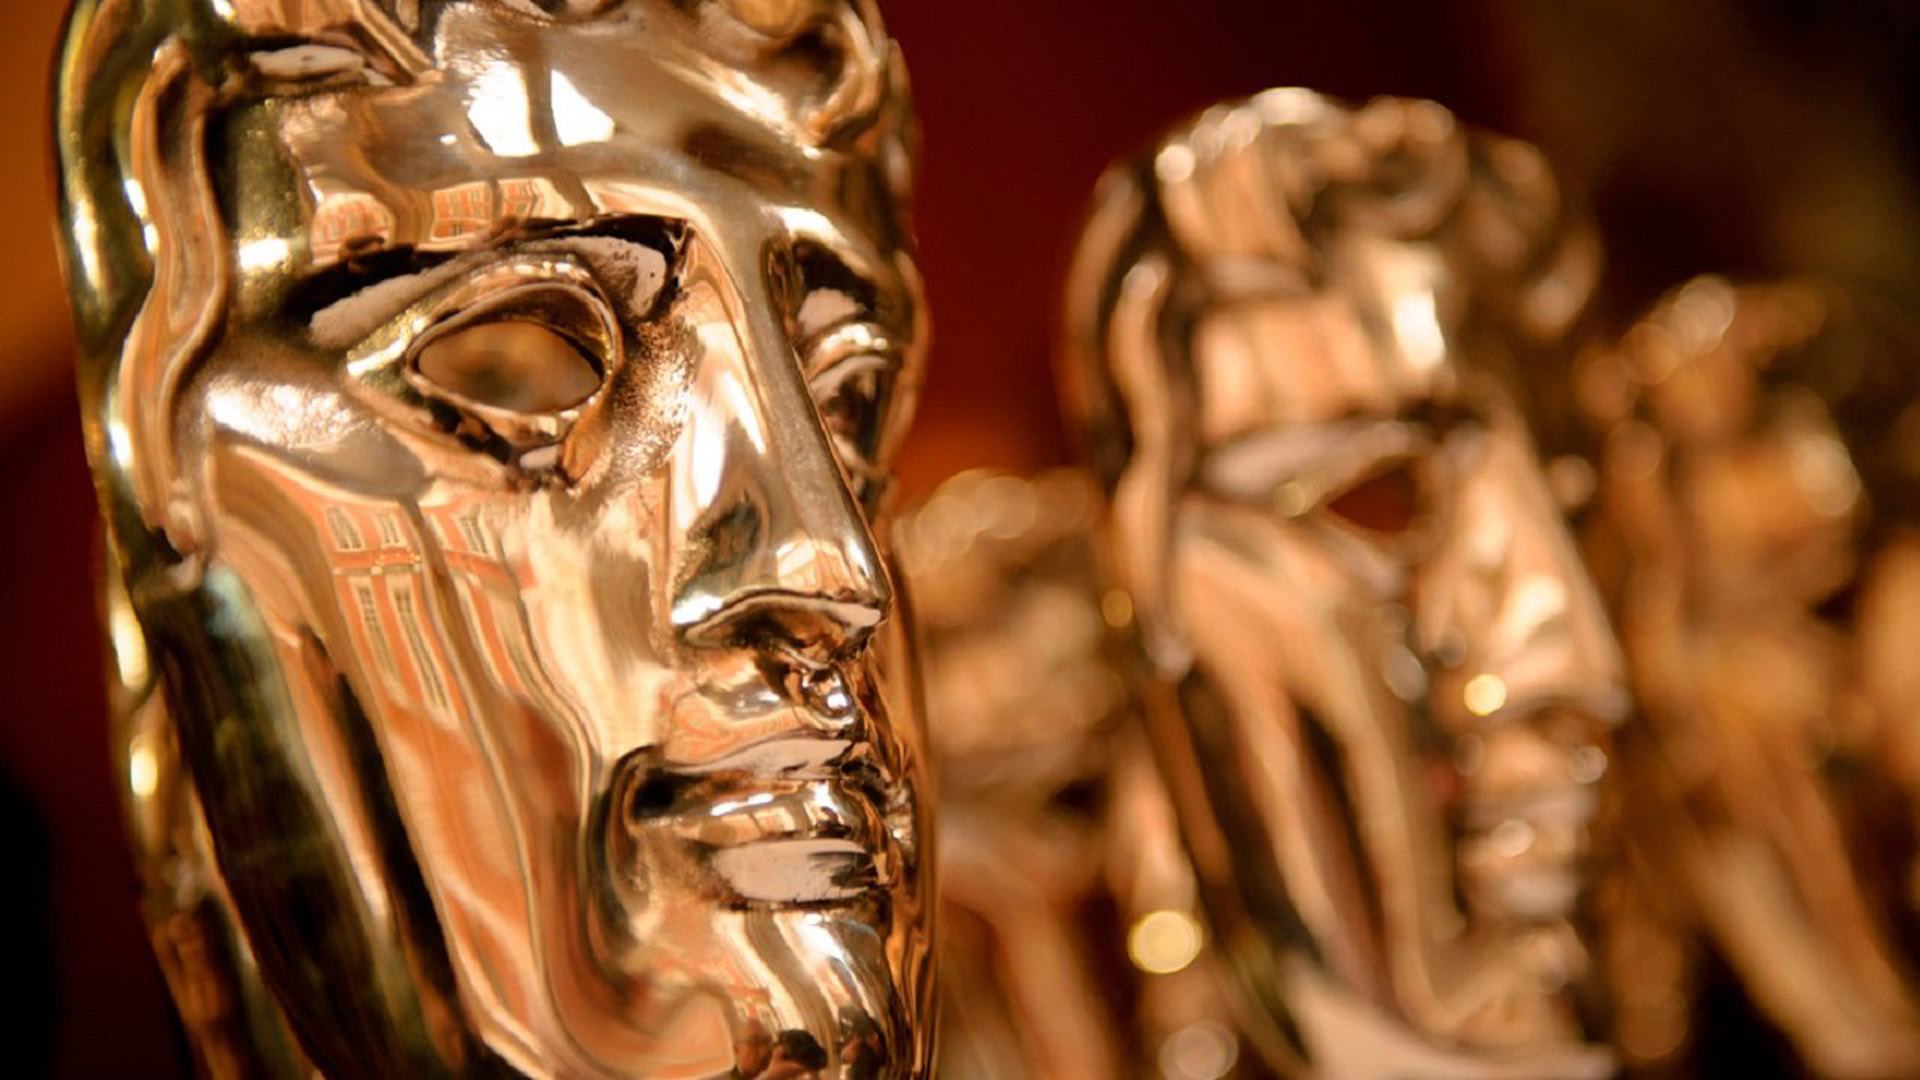 برندگان رویداد BAFTA Game Awards مشخص شدند